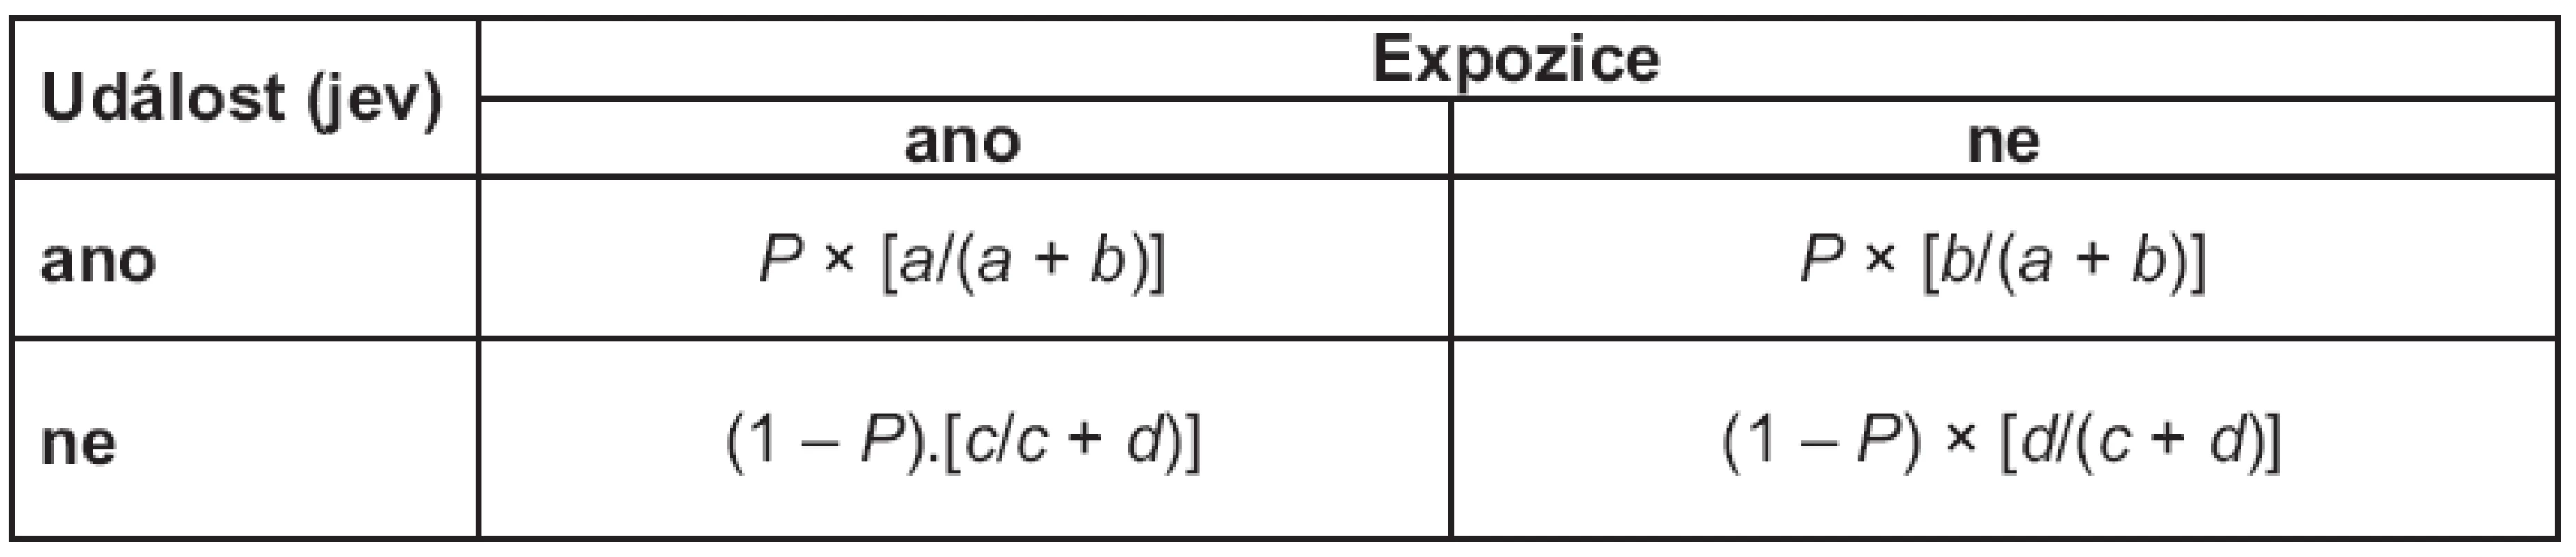 Výpočty relativních četností realizované expozice pro skupinu s updálostí a bezy události v políčkách tabulky 2 × 2.